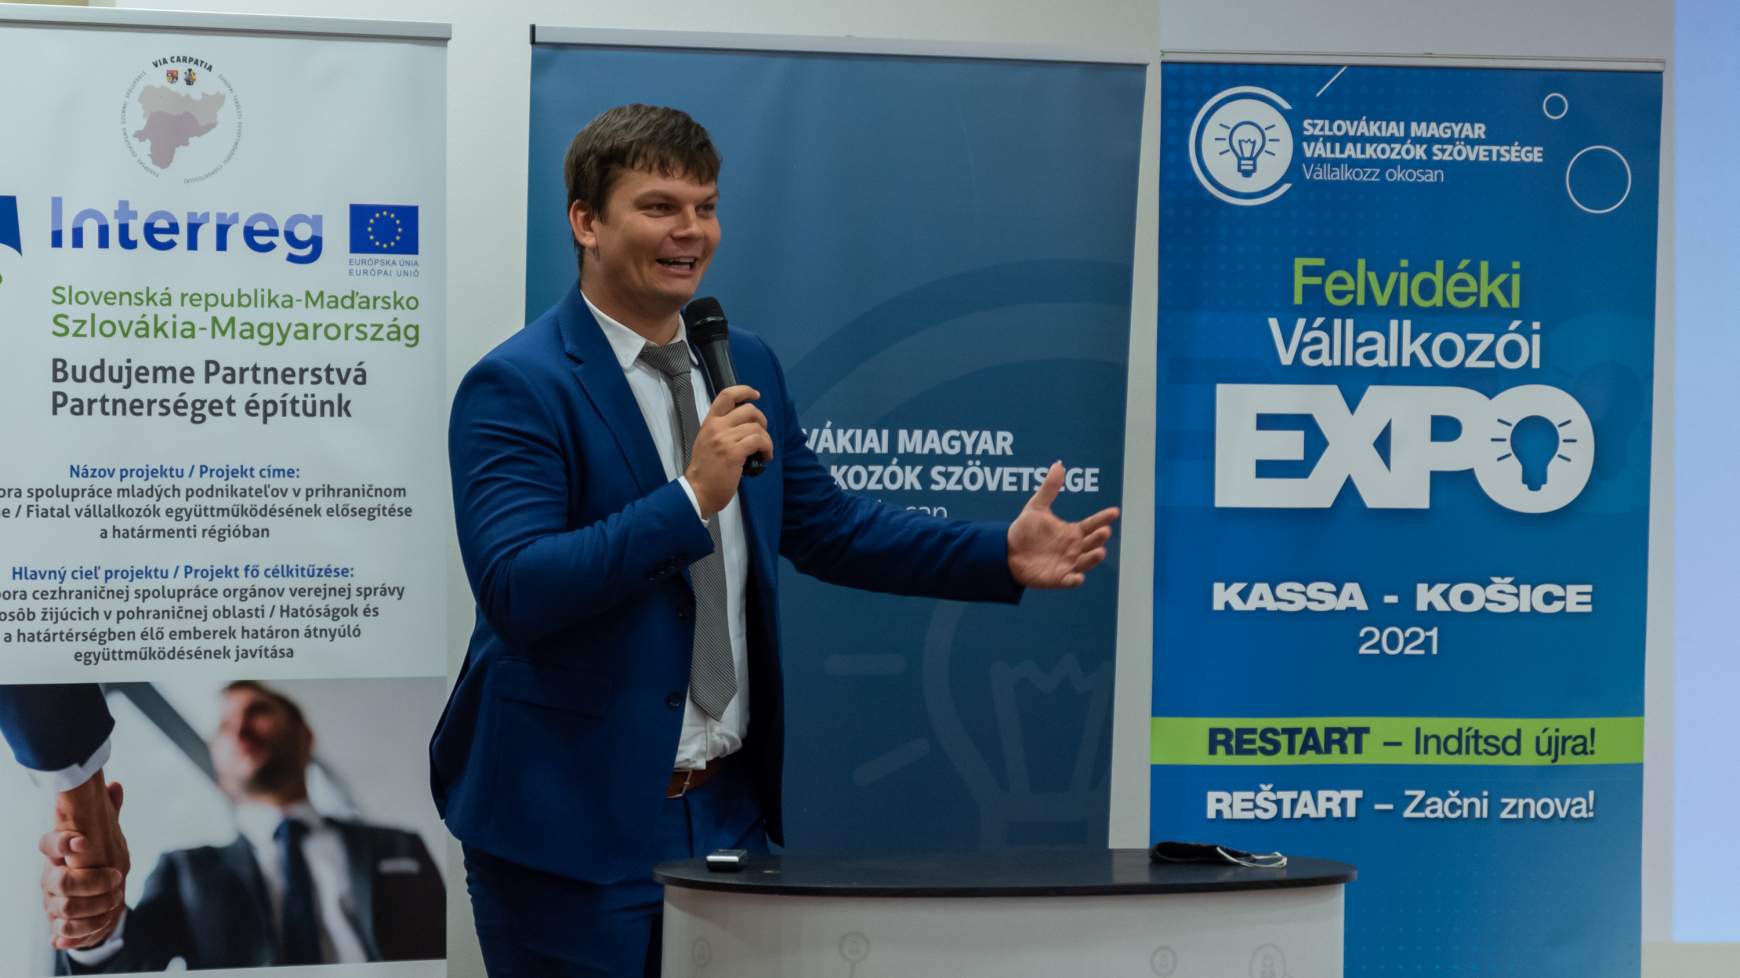 2021-08-27 Felvidéki Vállalkozói Expo, Kassa, Szlovákiai Magyar Vállalkozók Szövetsége